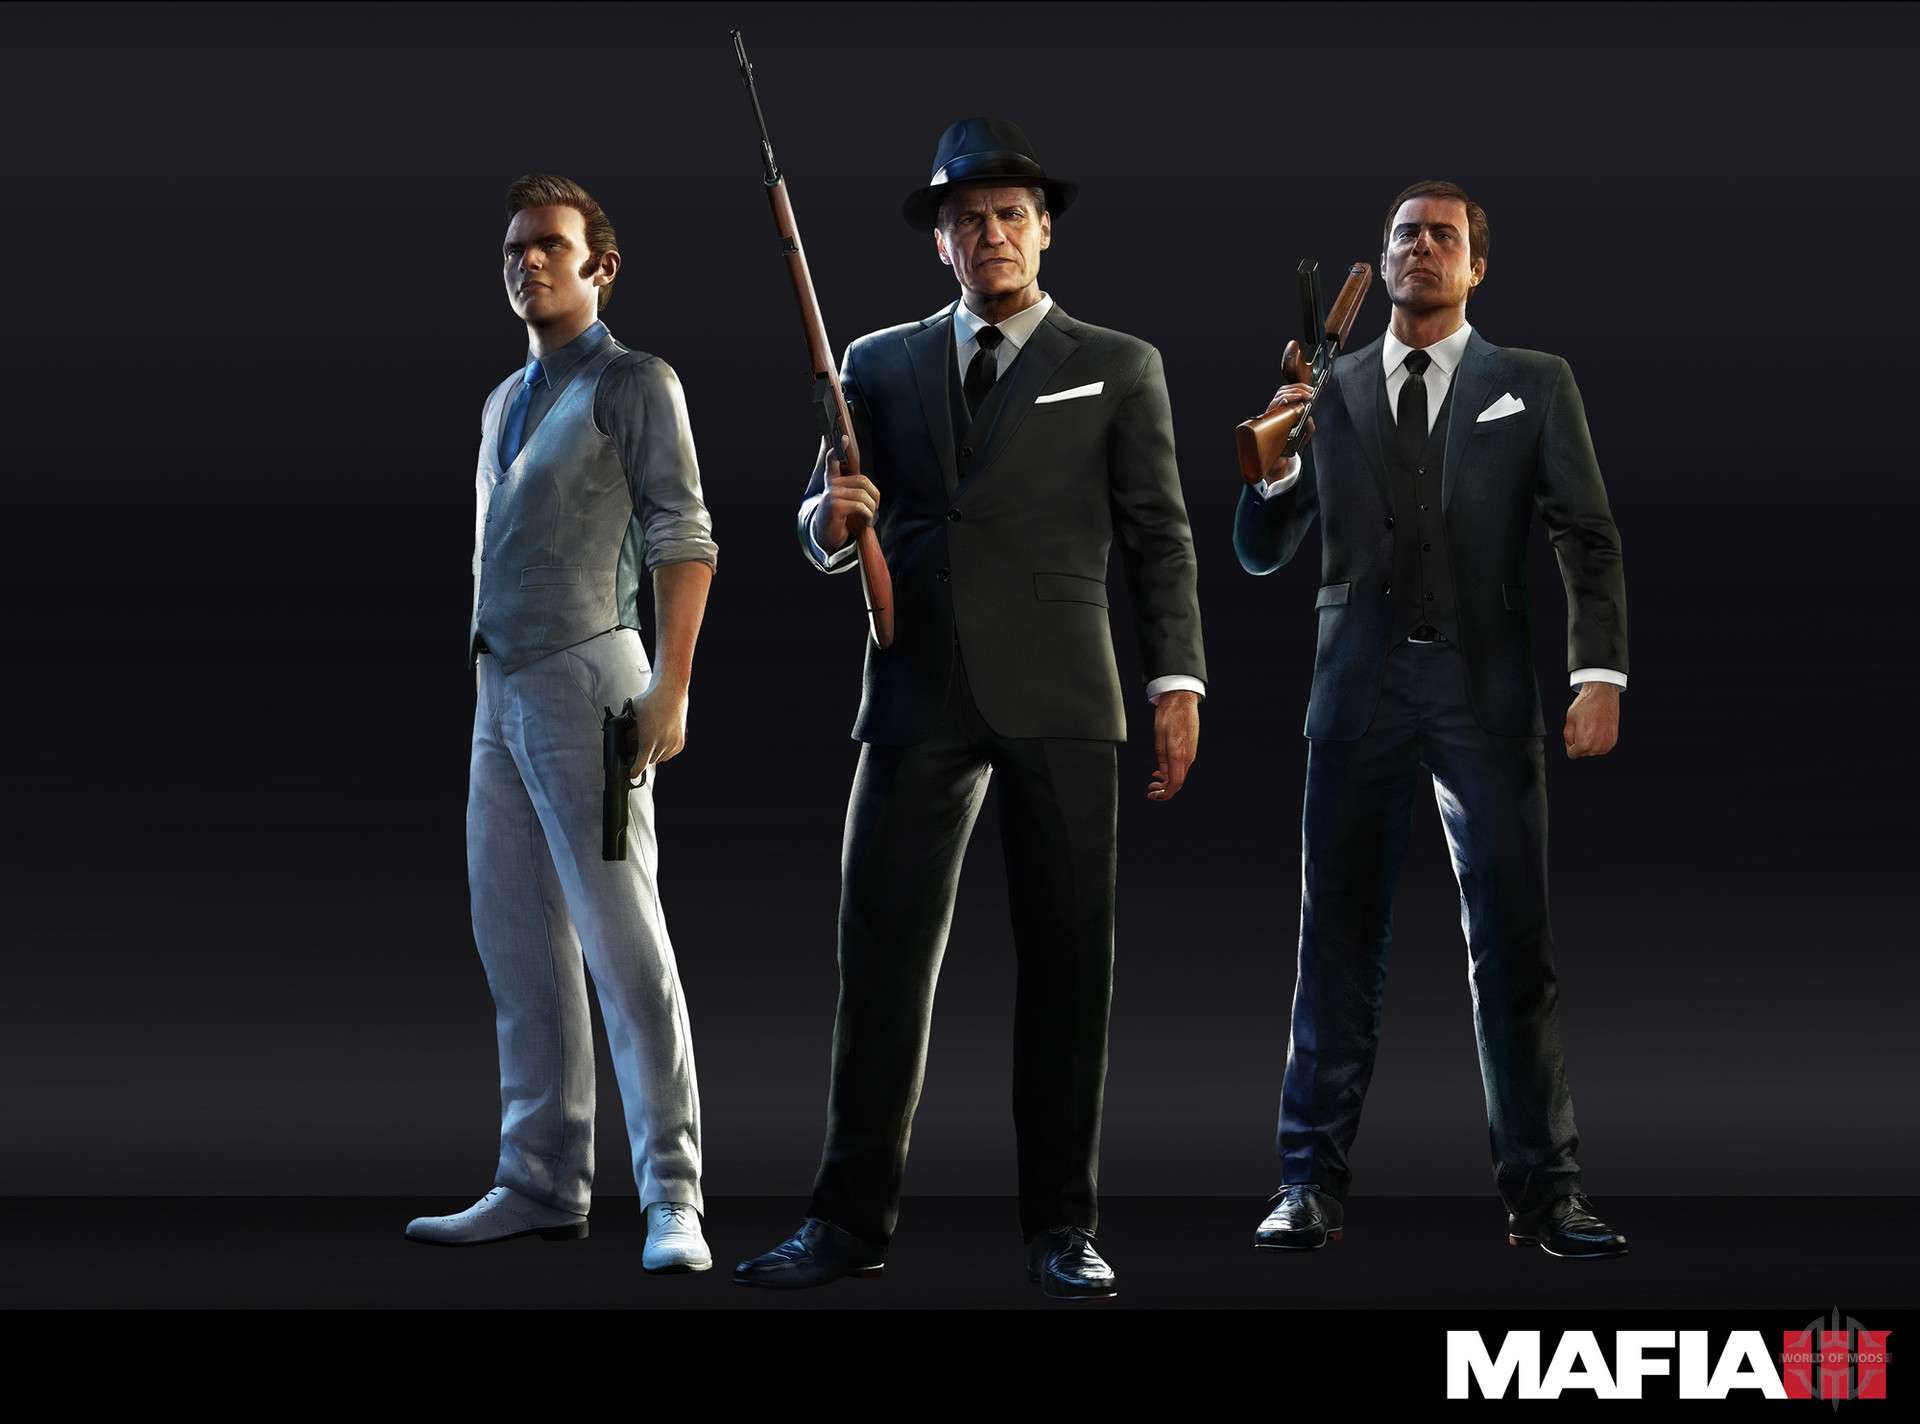 Salvar em Mafia 3